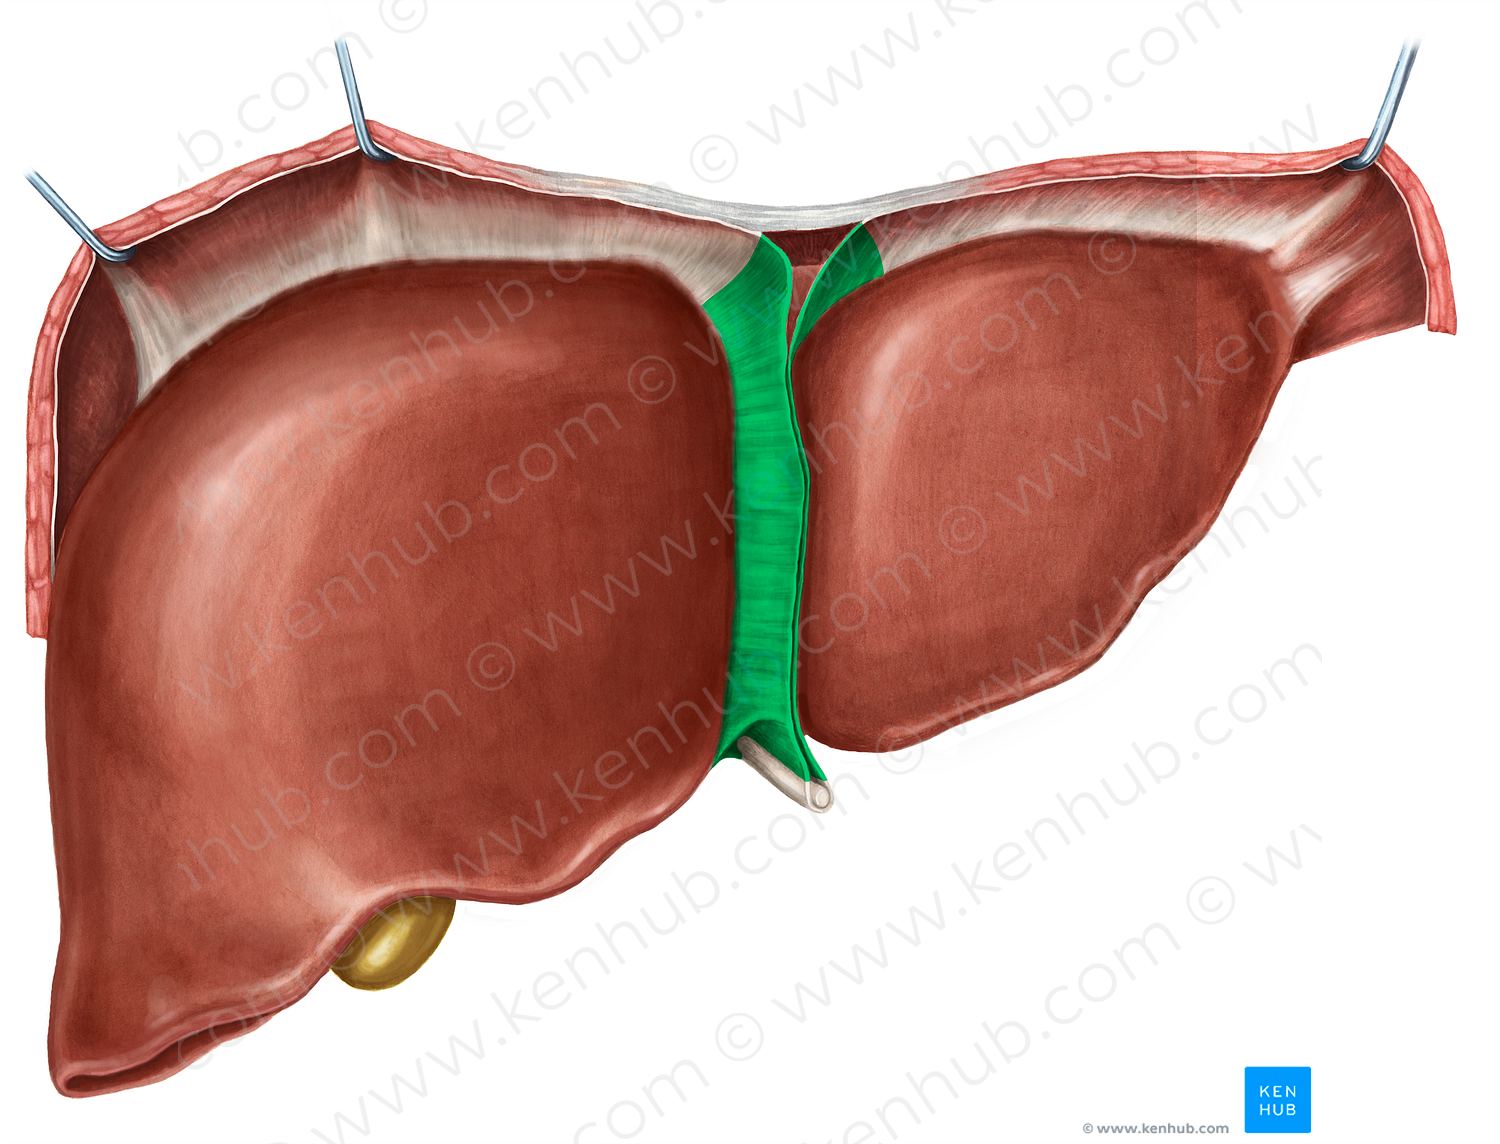 Falciform ligament of liver (#4527)